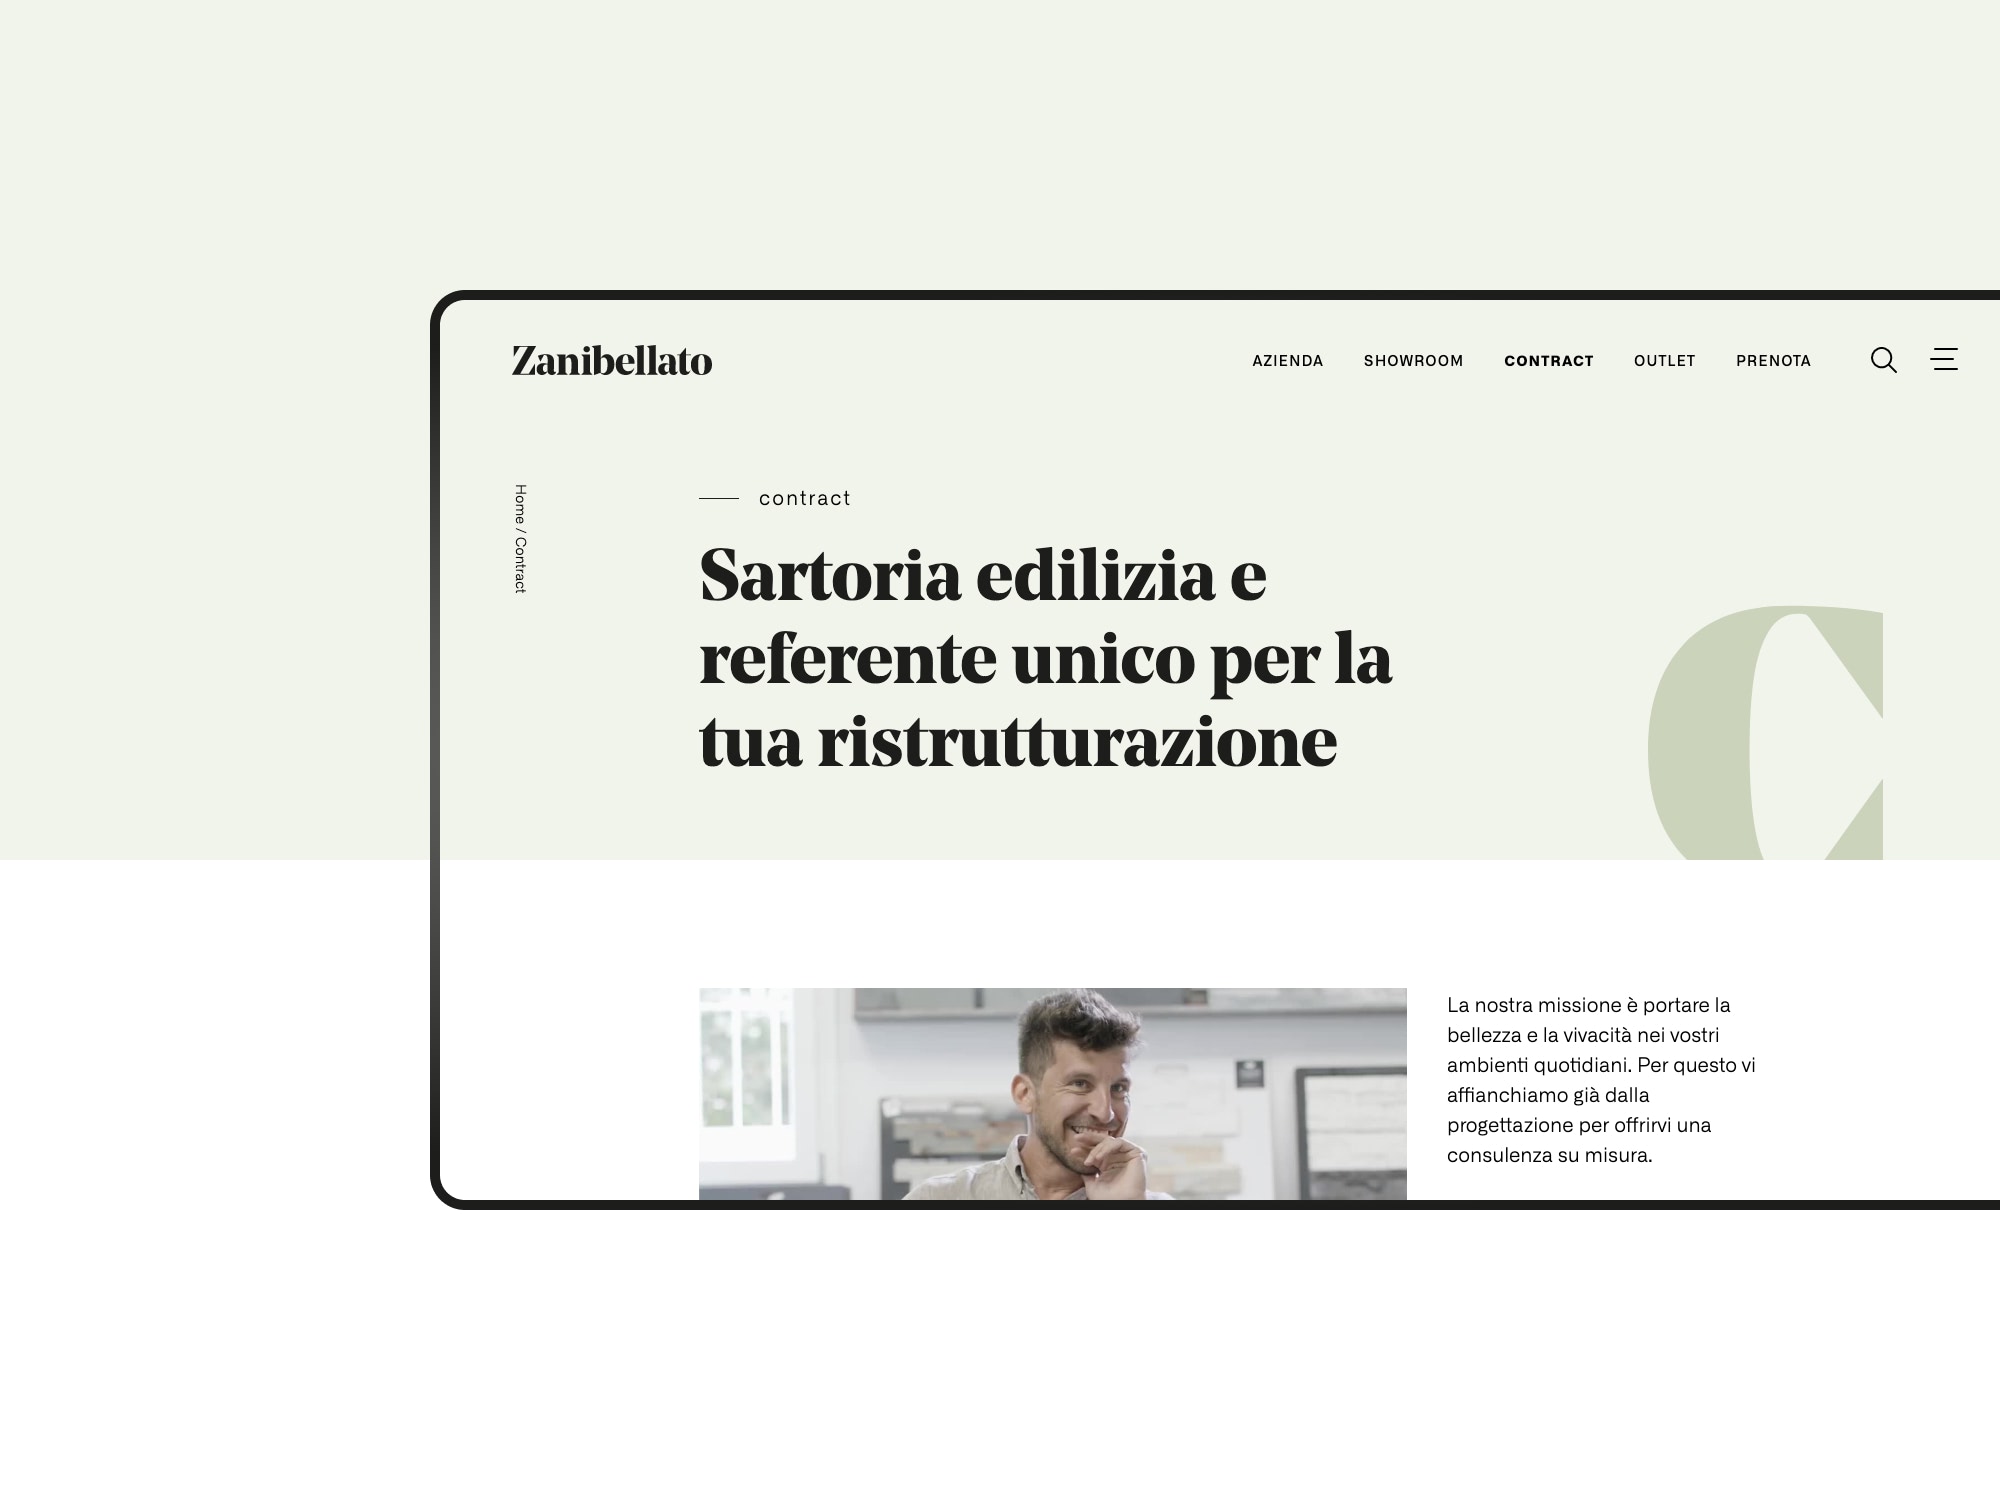 Zanibellato – Contract